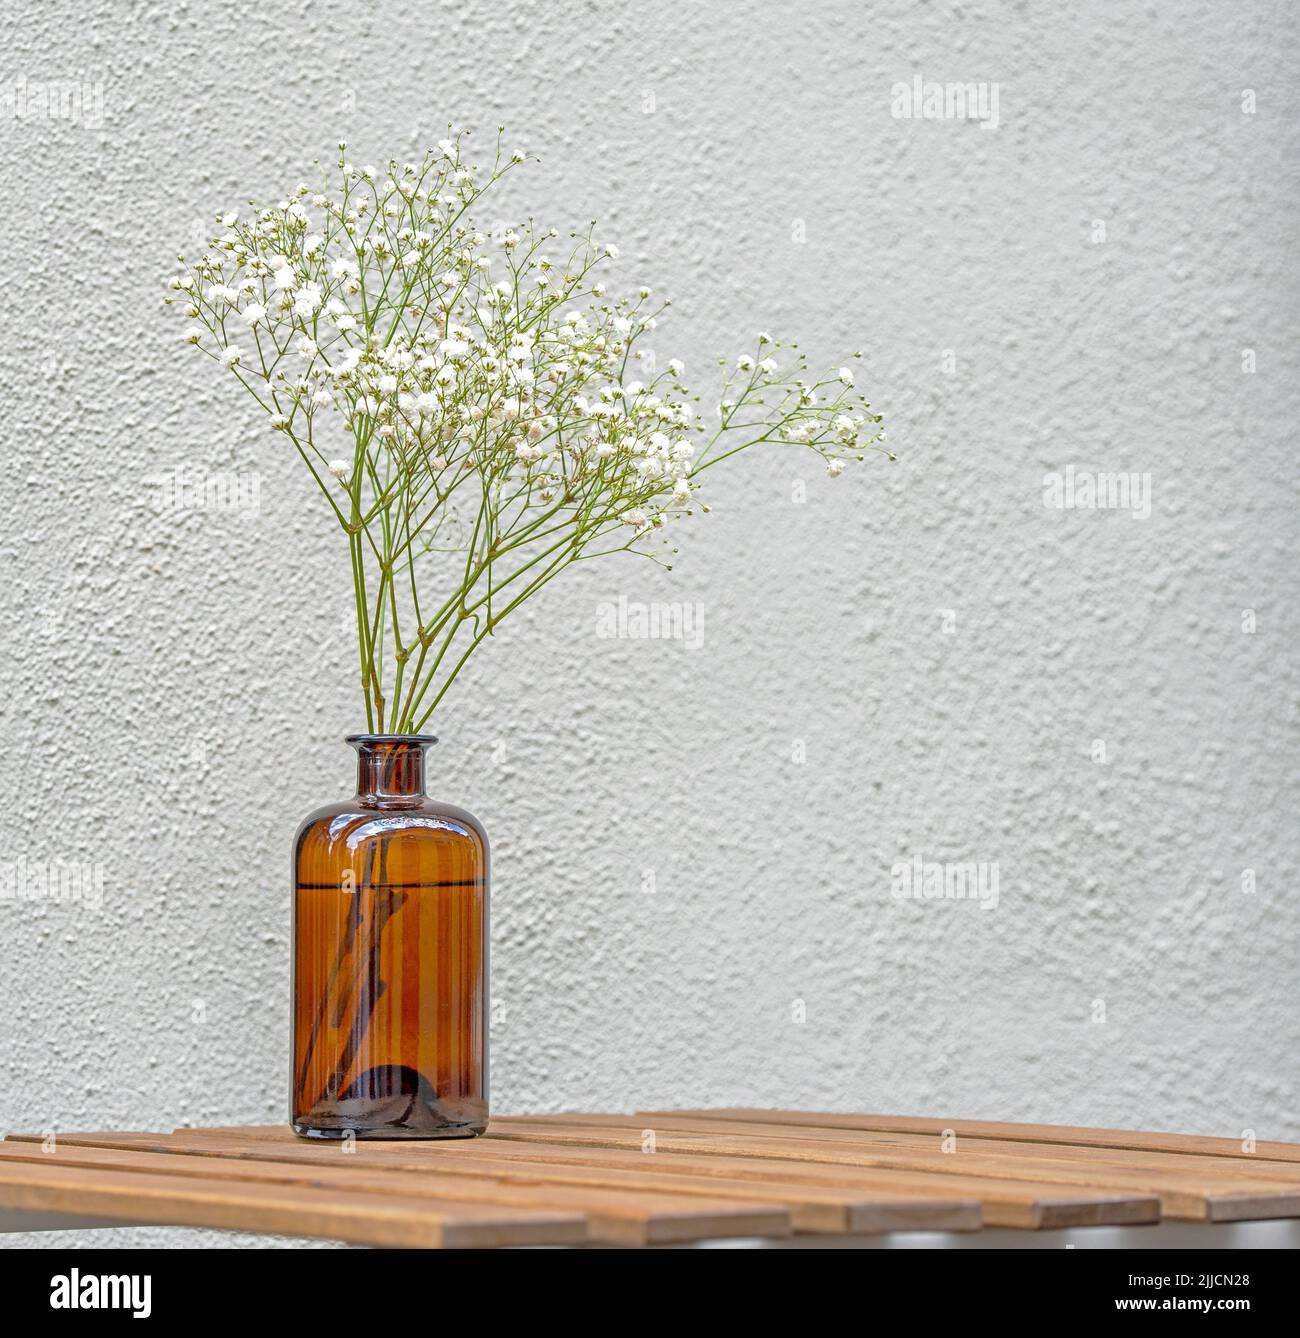 STILL Life avec composition florale minimale sur une table en bois dans un café de rue Banque D'Images